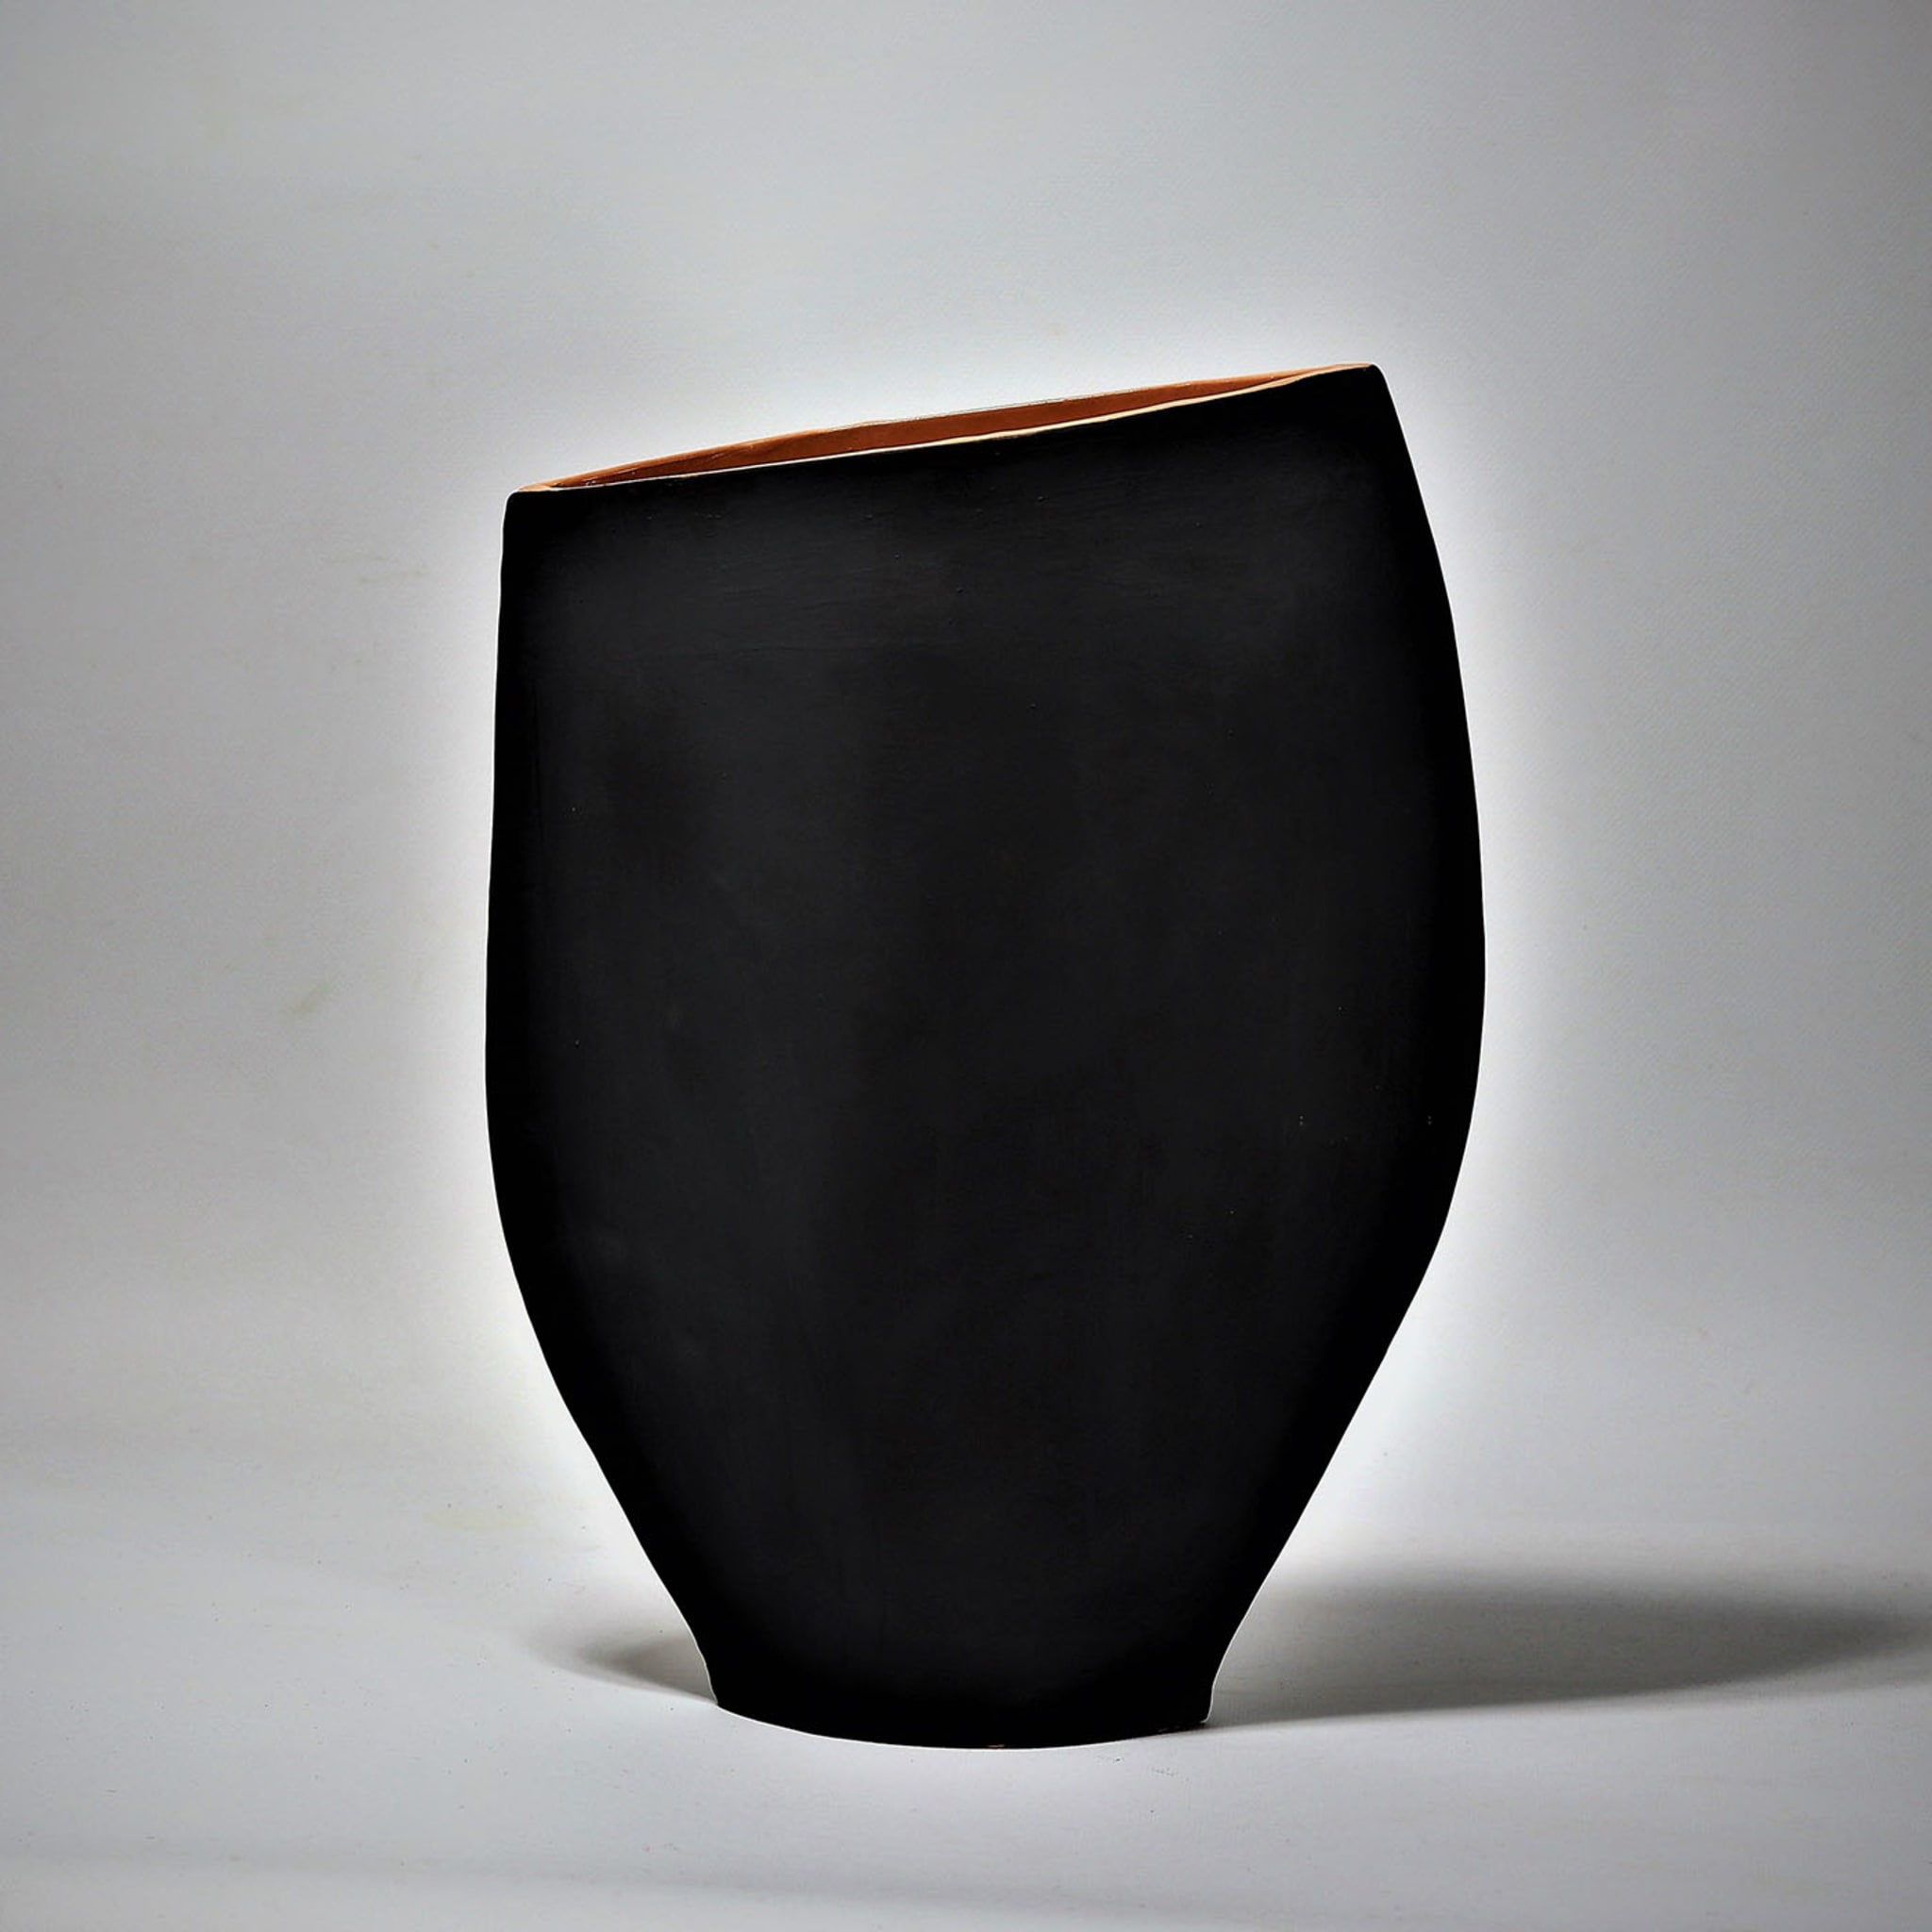 Bellas Animeddas Polychrome Vase #1 - Alternative view 2